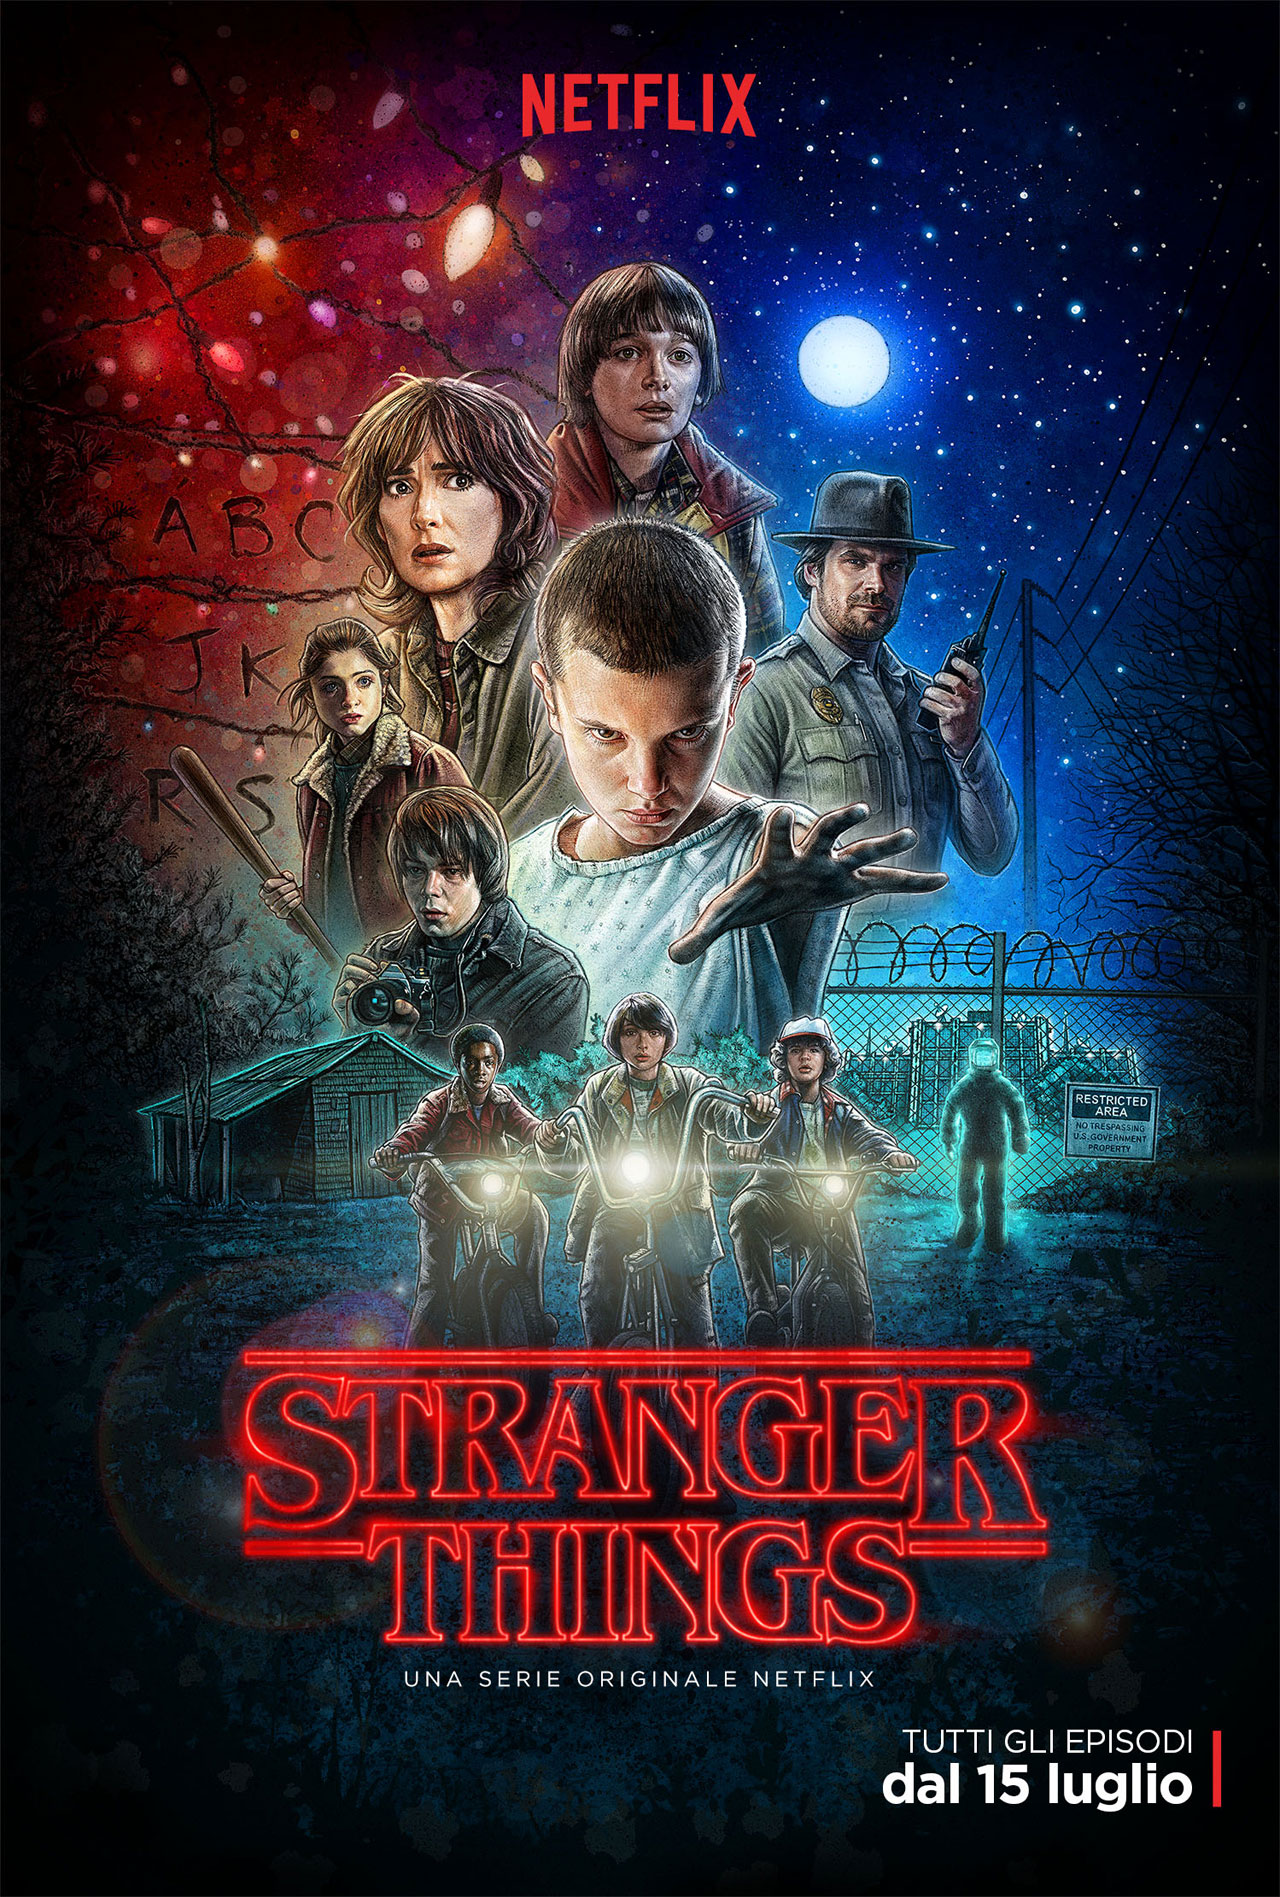 Su MYmovies.it i poster di Stranger Things, serie originale Netflix in streaming dal prossimo 15 luglio. -  Dall'articolo: Gli anni '80 sono tornati. Stranger Things, i poster.